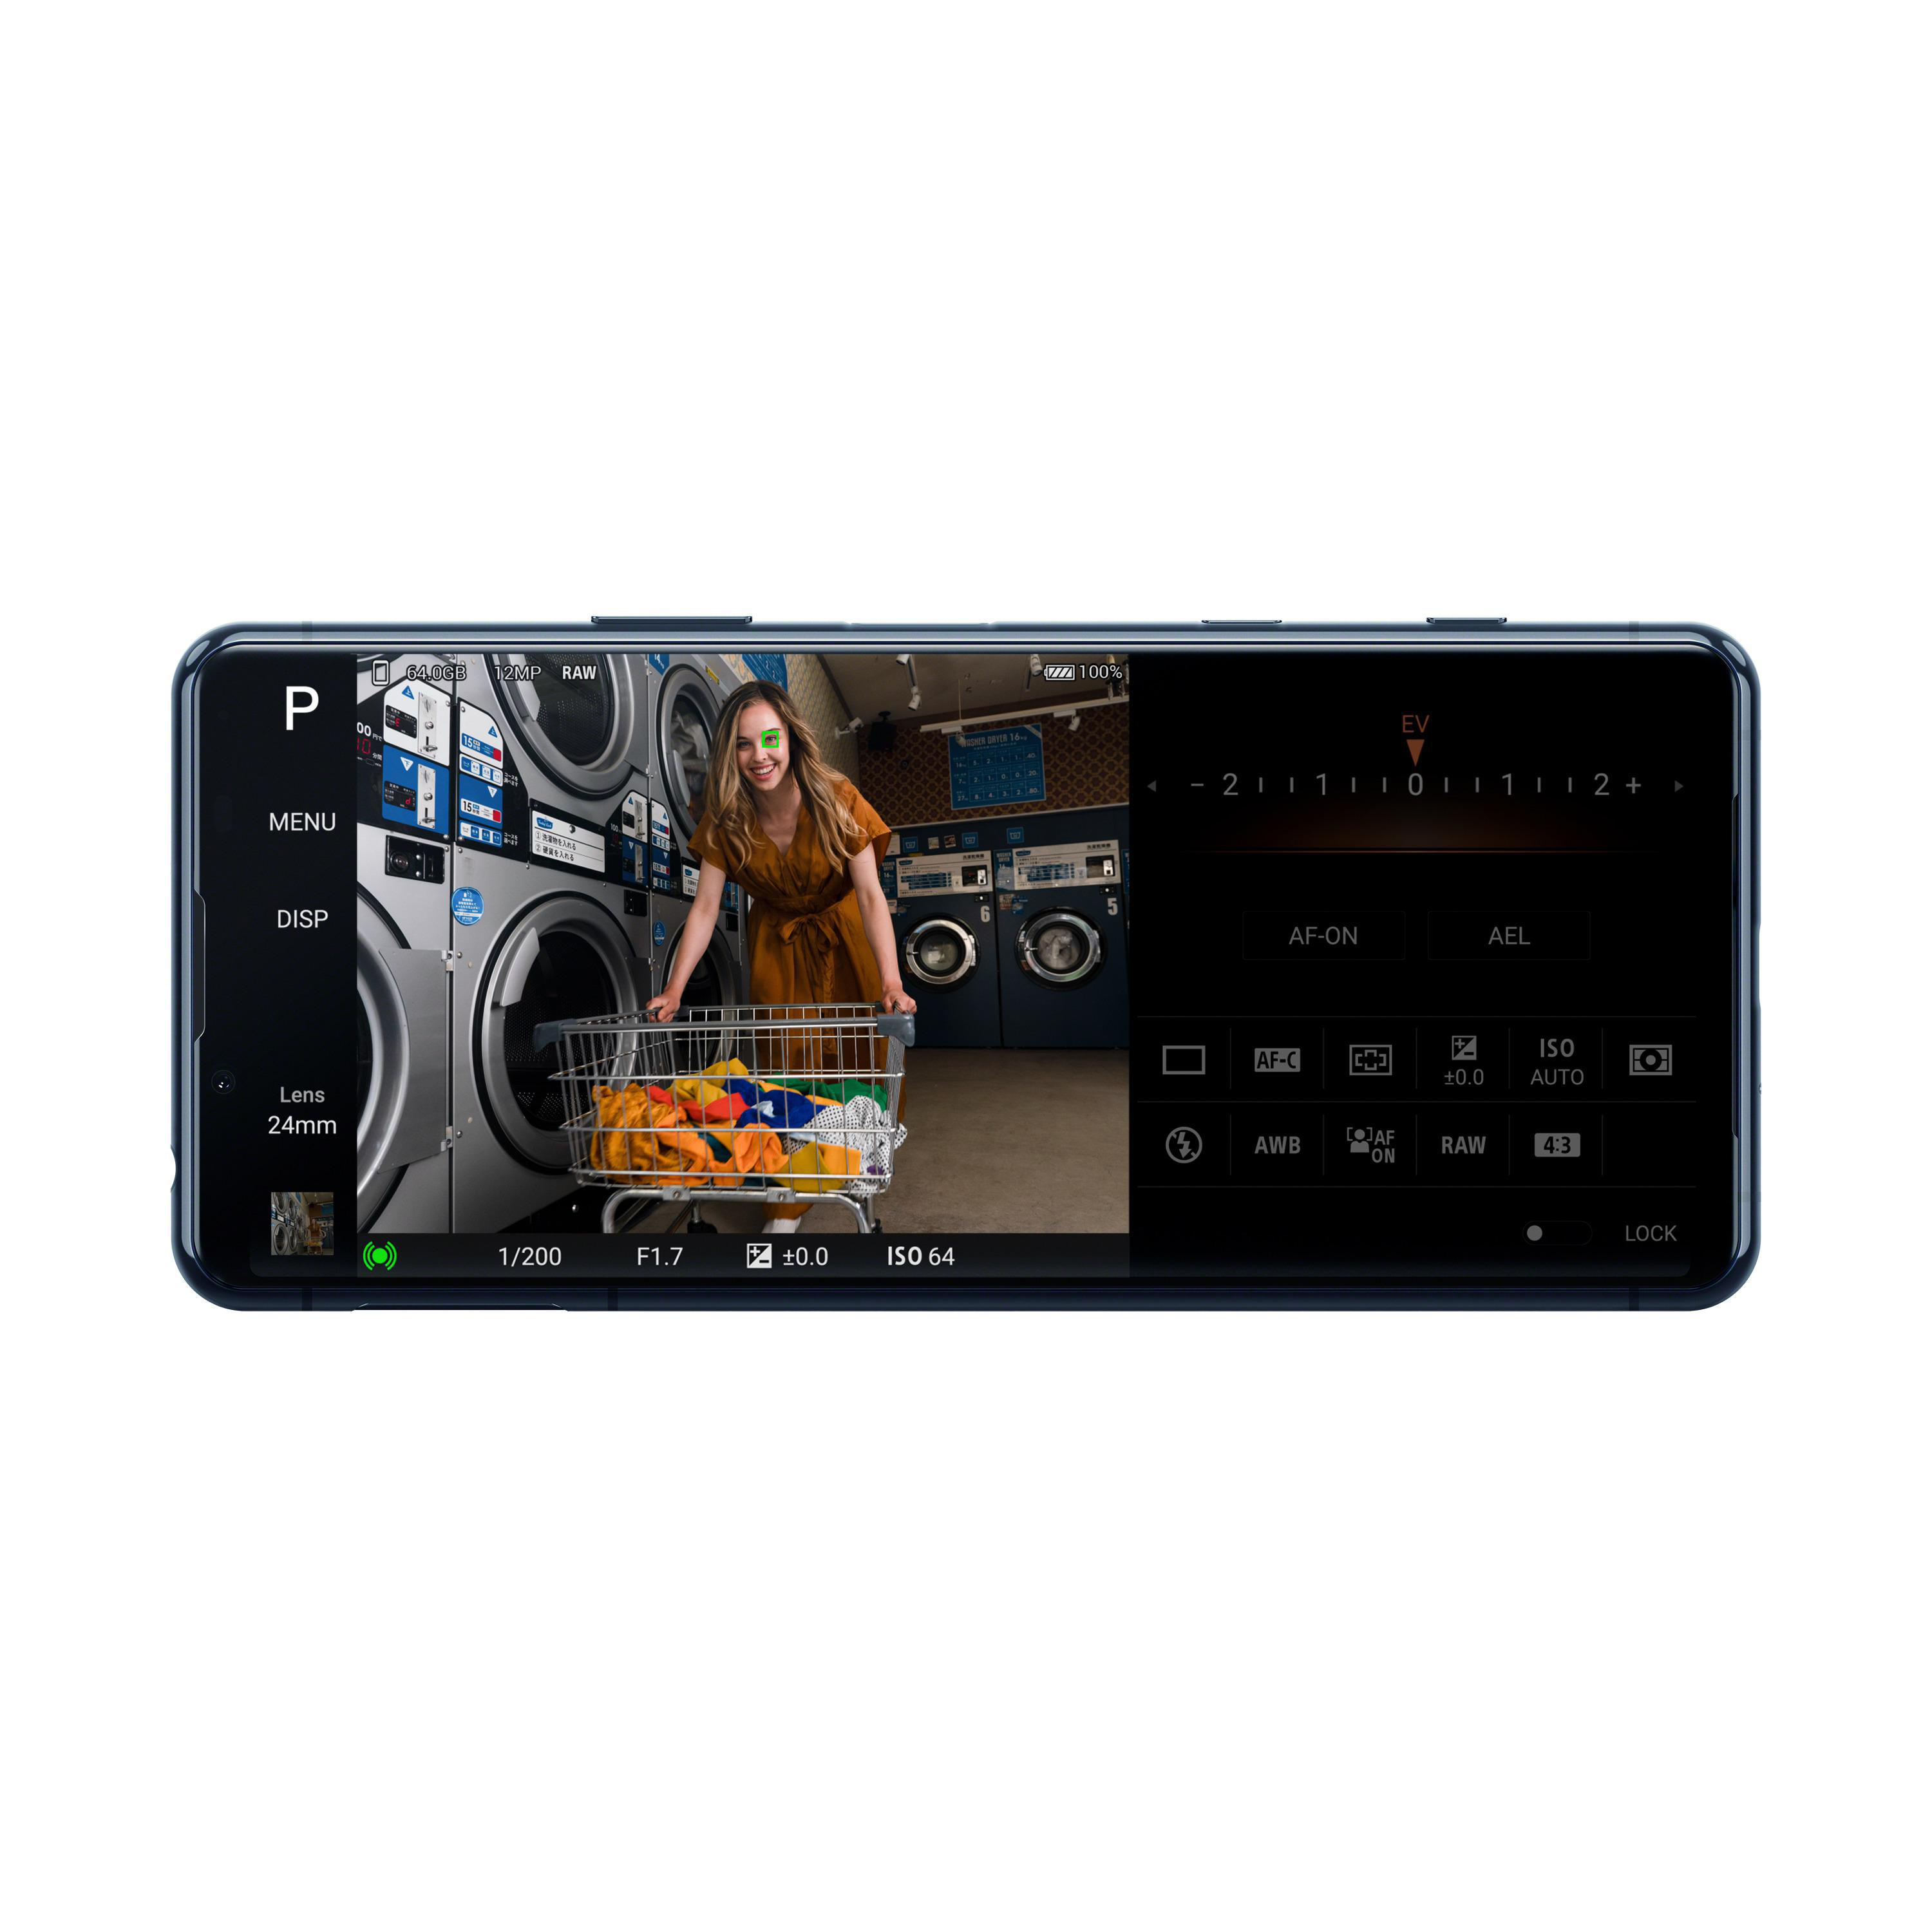 SONY Xperia GB Display 128 SIM 5 21:9 Dual 5G Schwarz II